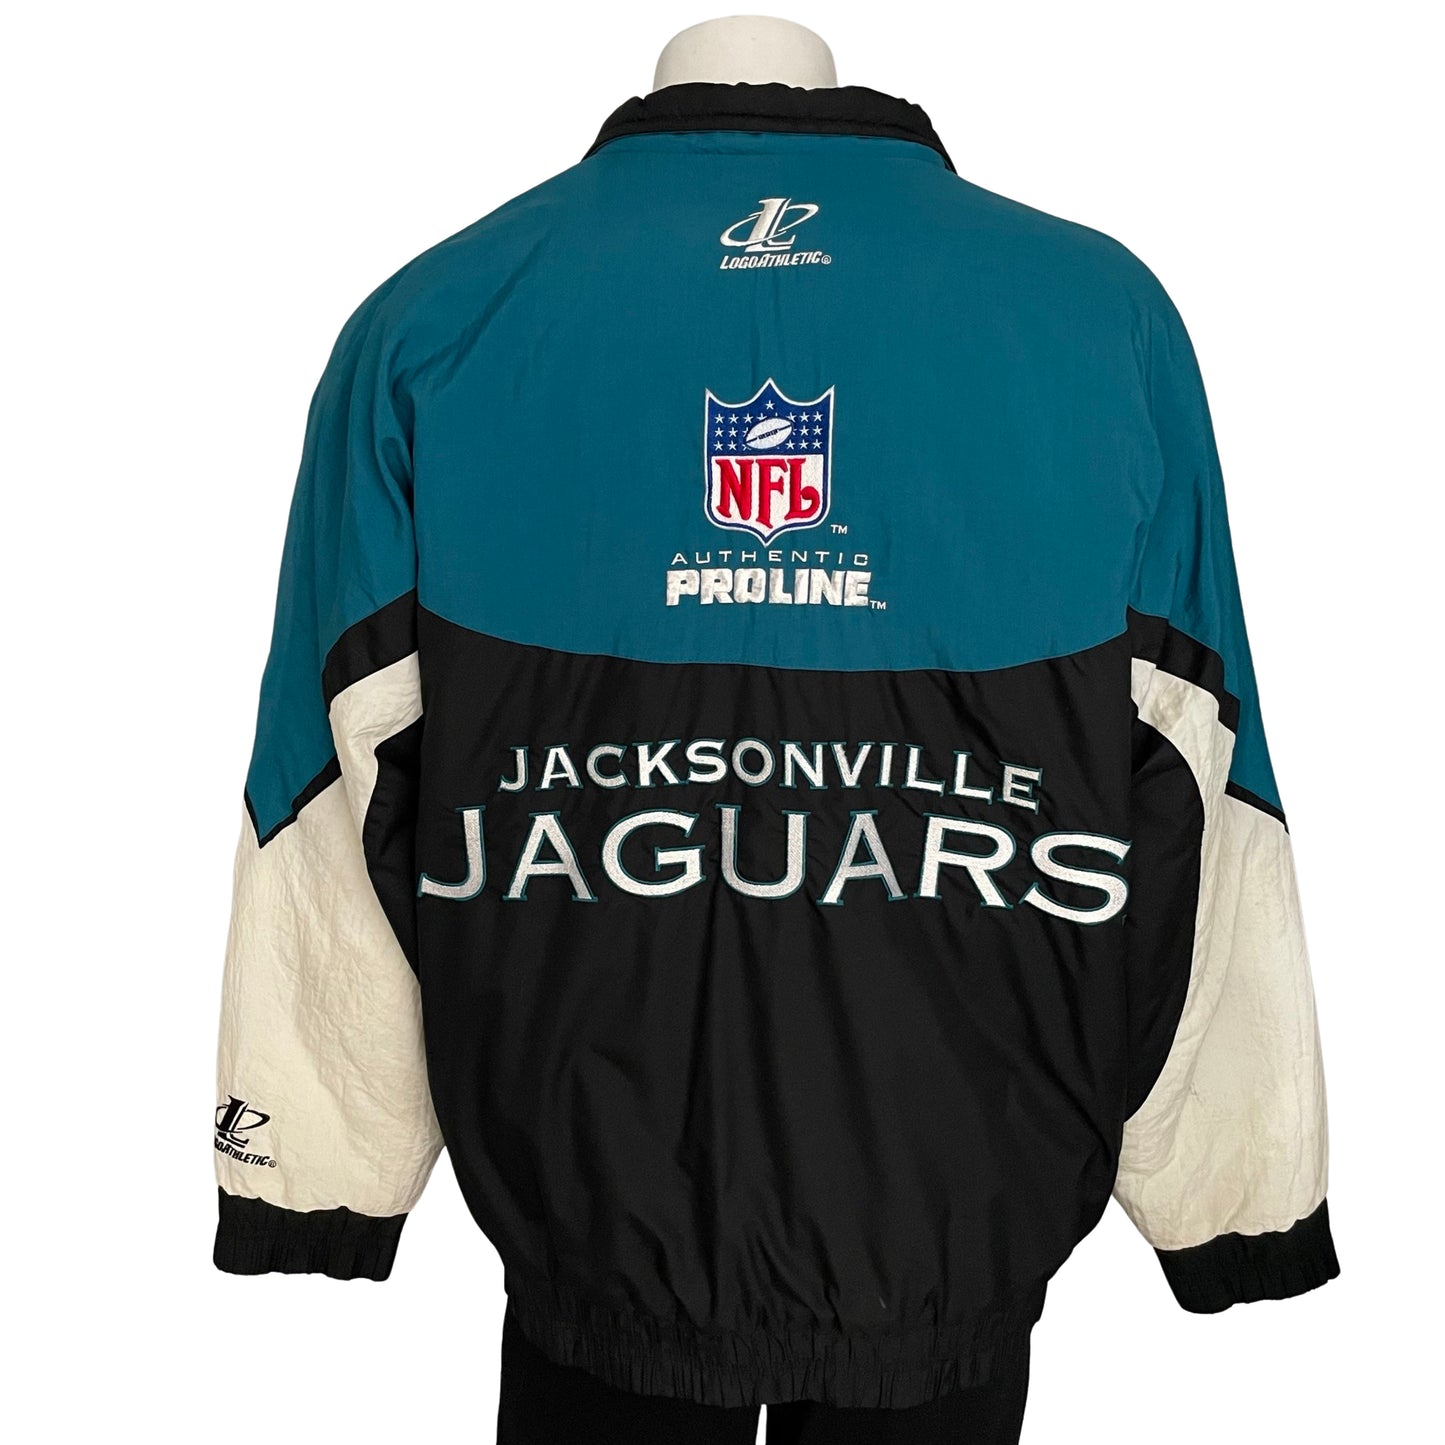 Vintage Jacksonville Jaguars jacket size LARGE